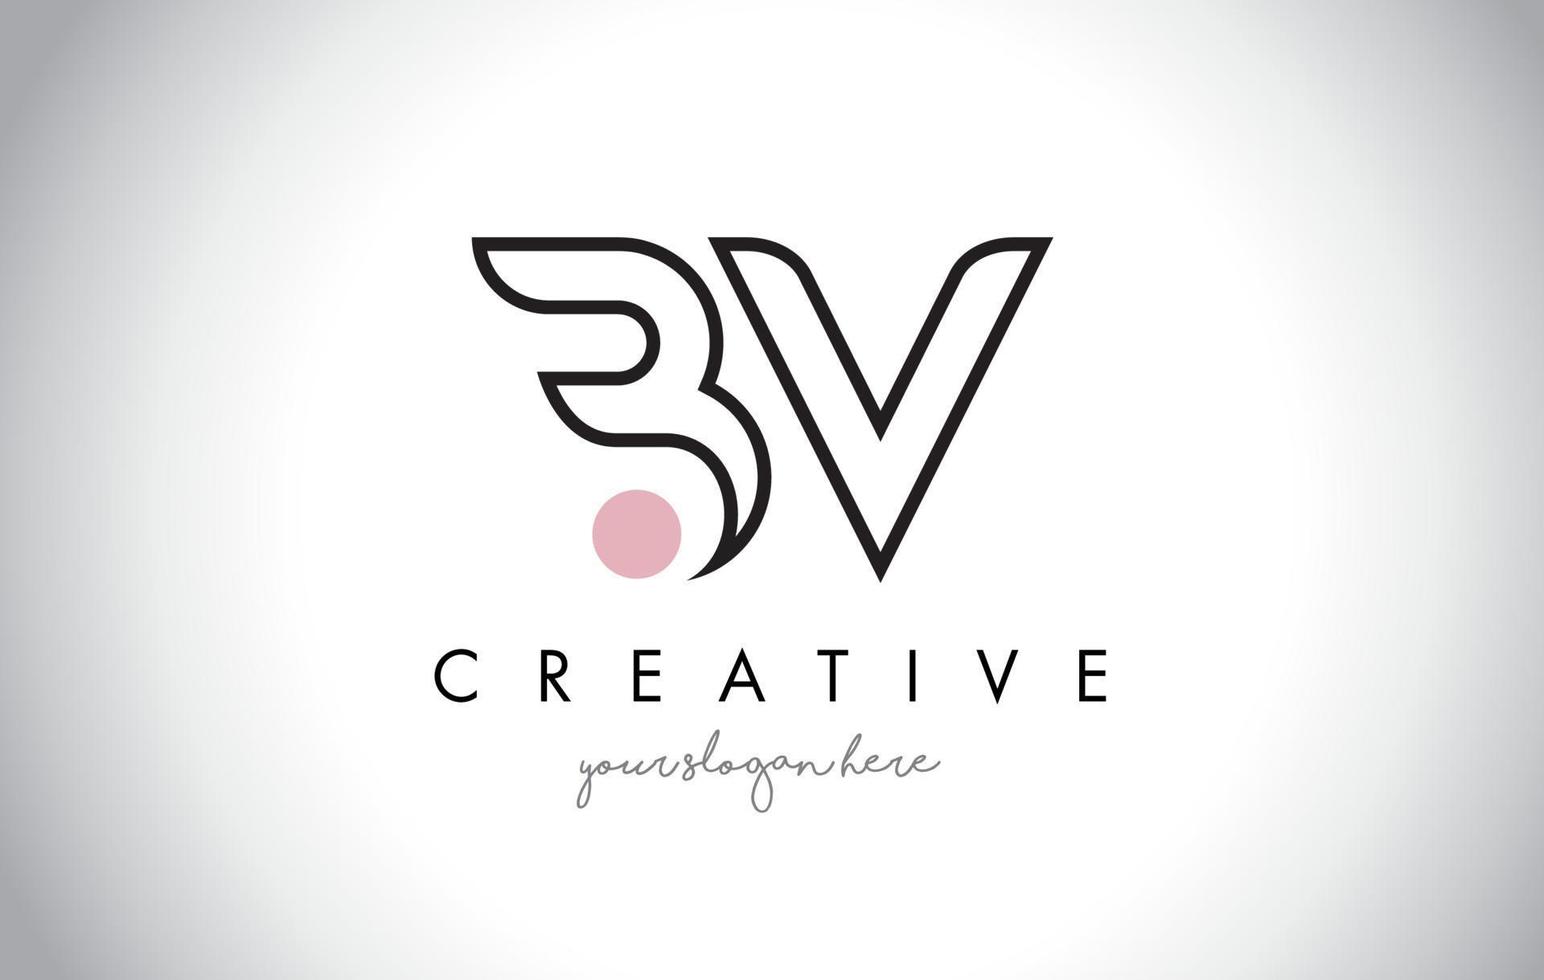 Diseño de logotipo de letra bv con tipografía creativa de moda moderna. vector